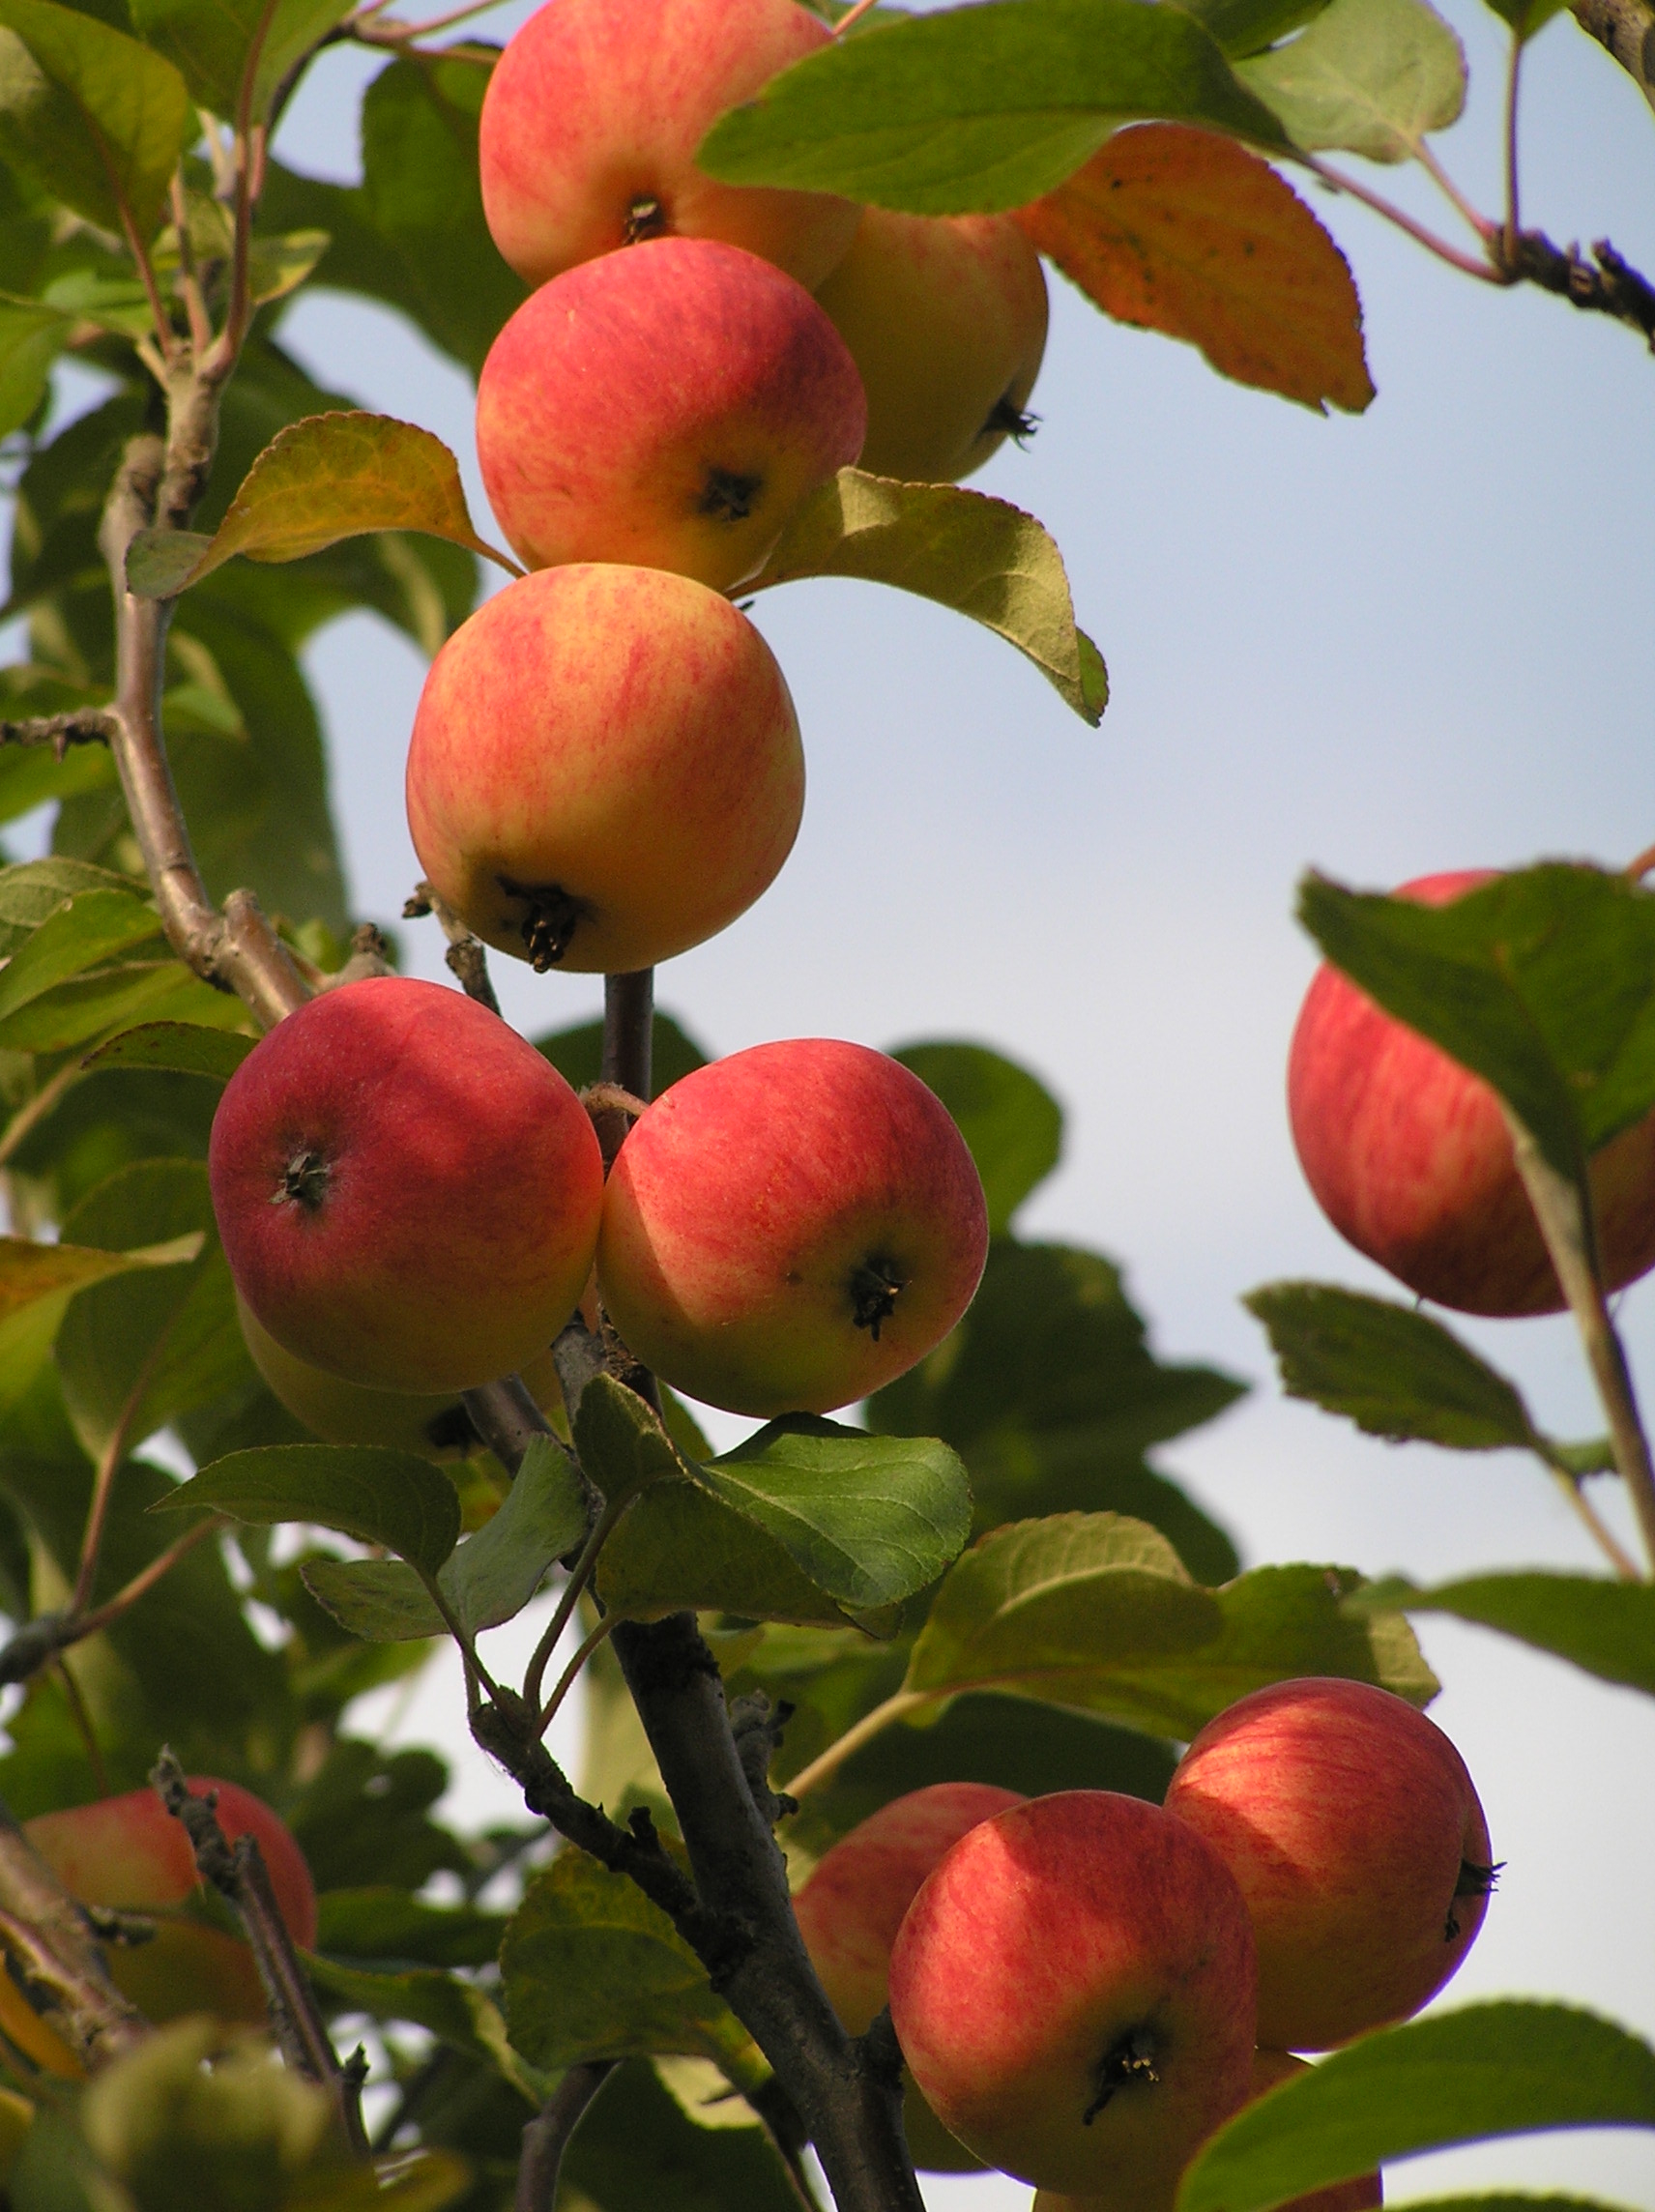 райские яблочки фото